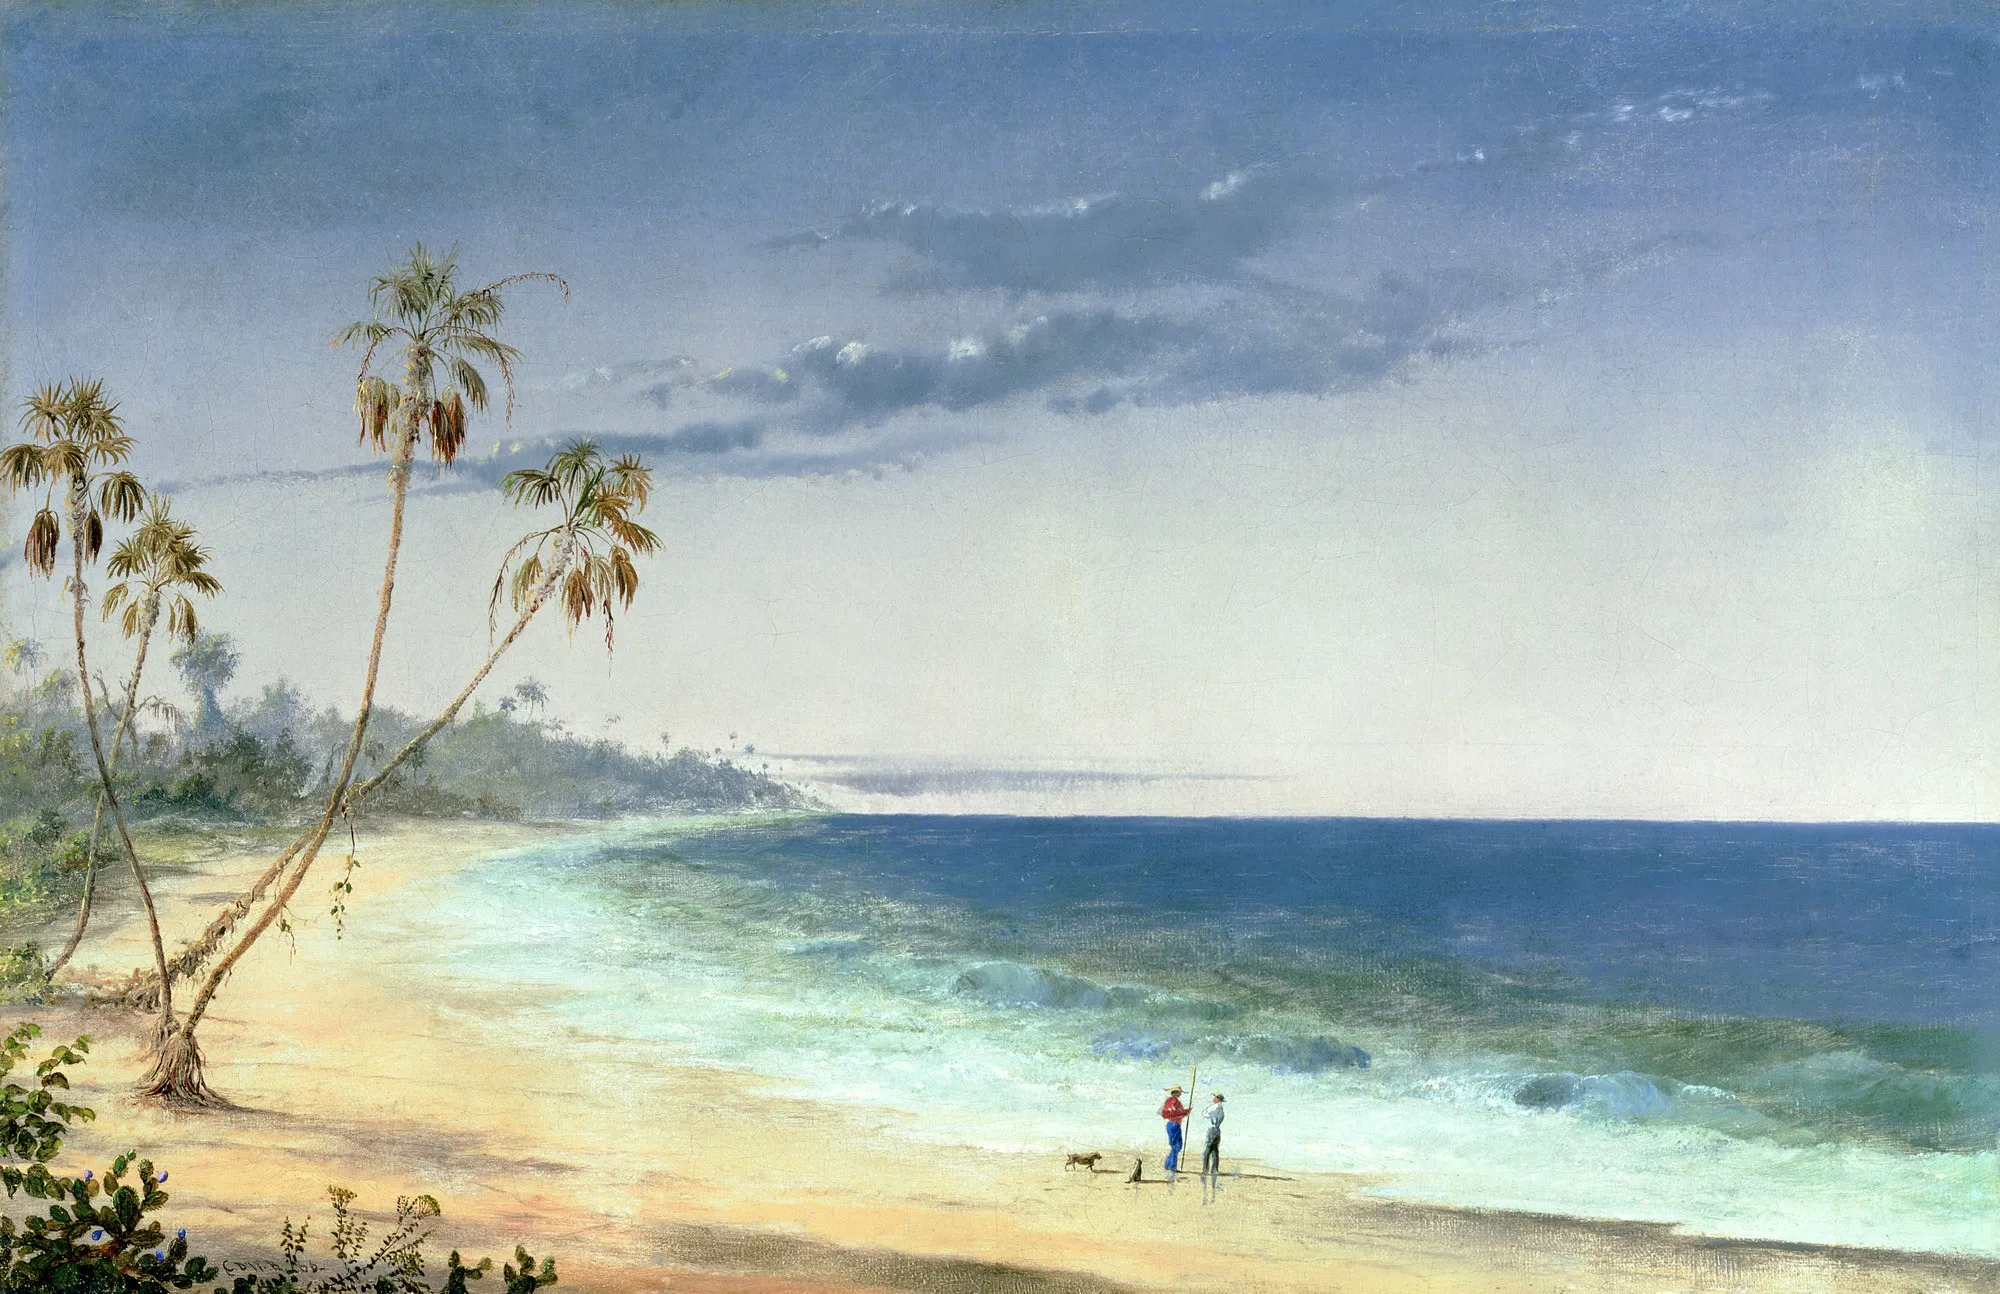 Charles De Wolf Brownell, Paysage cubain, 1866, huile sur toile, collection privée.